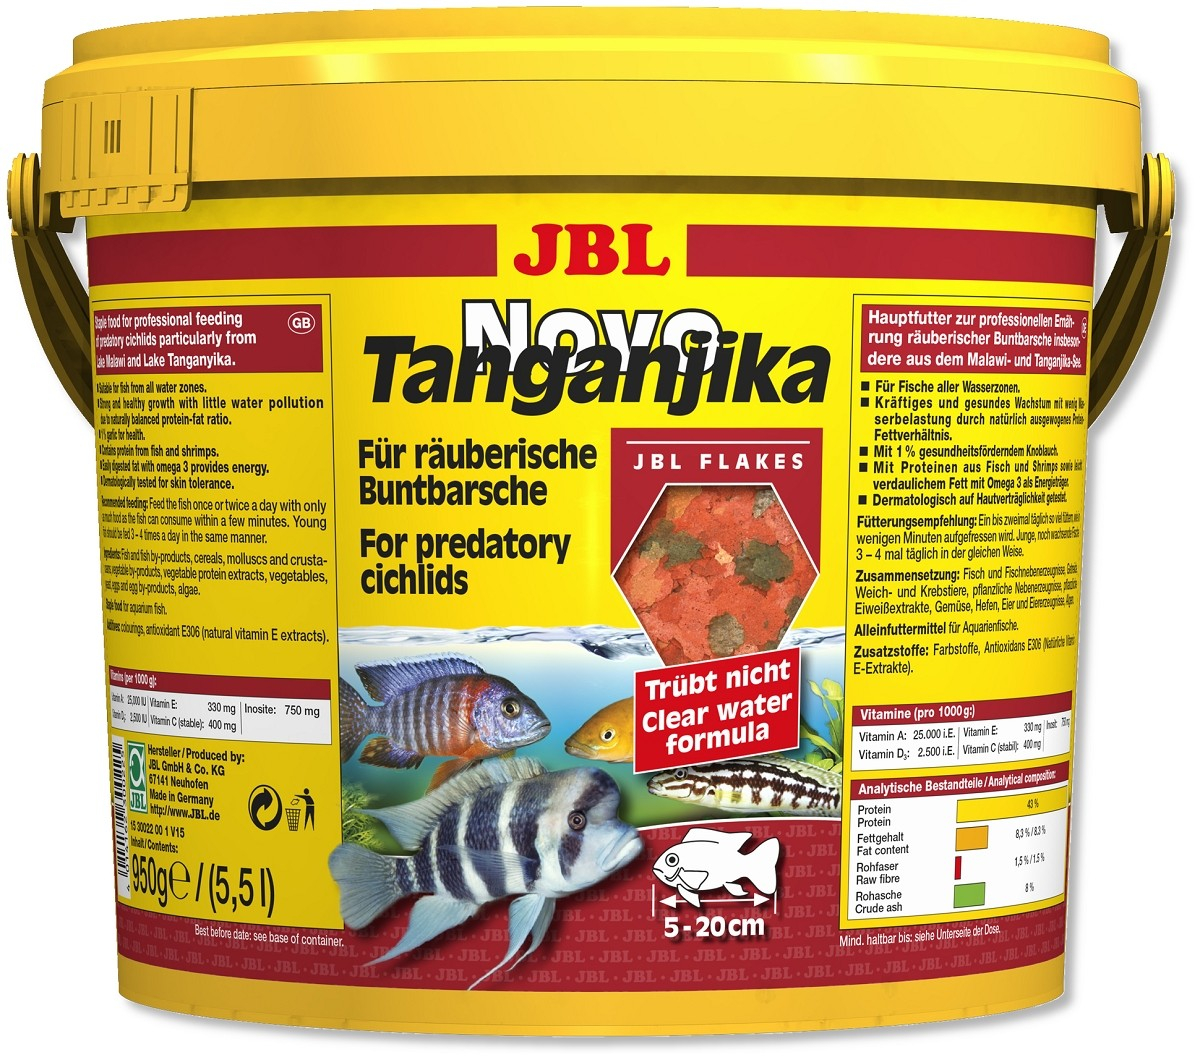 JBL NovoTanganjika Alimento para cíclidos depredadores